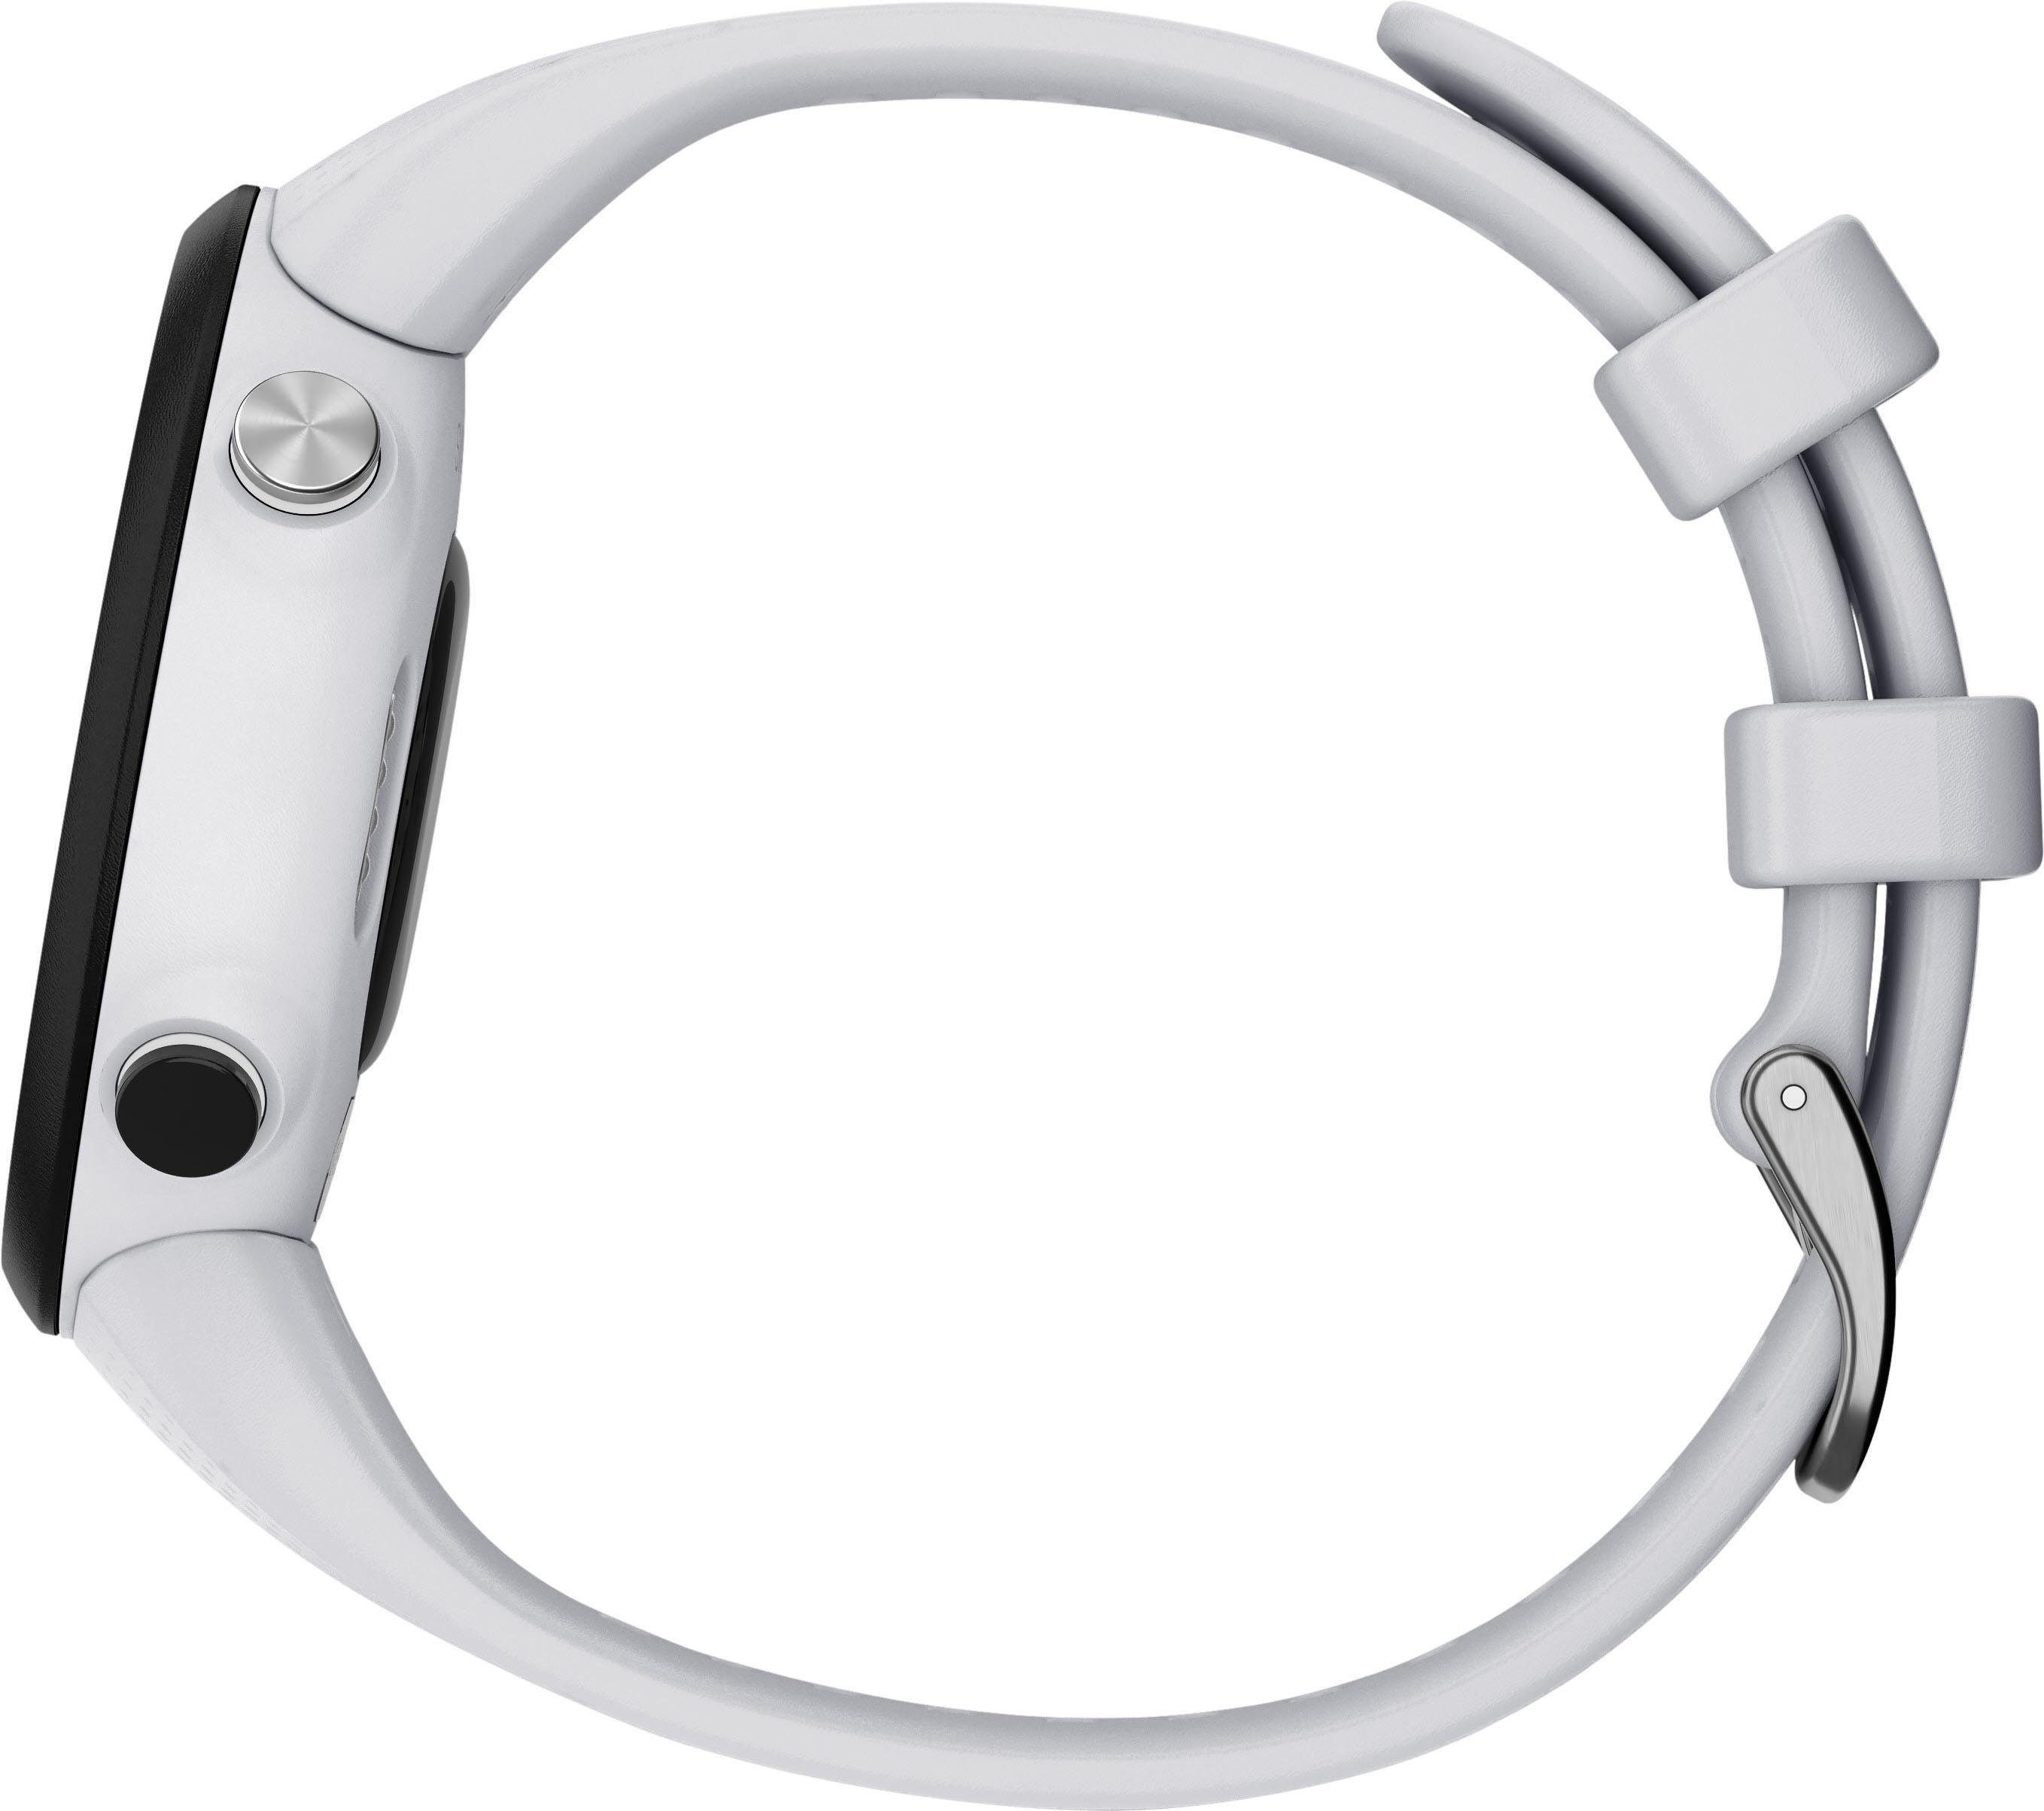 cm/1,04 Smartwatch (2,63 Swim2 mit Zoll) weiß Silikon-Armband Garmin 20 mm